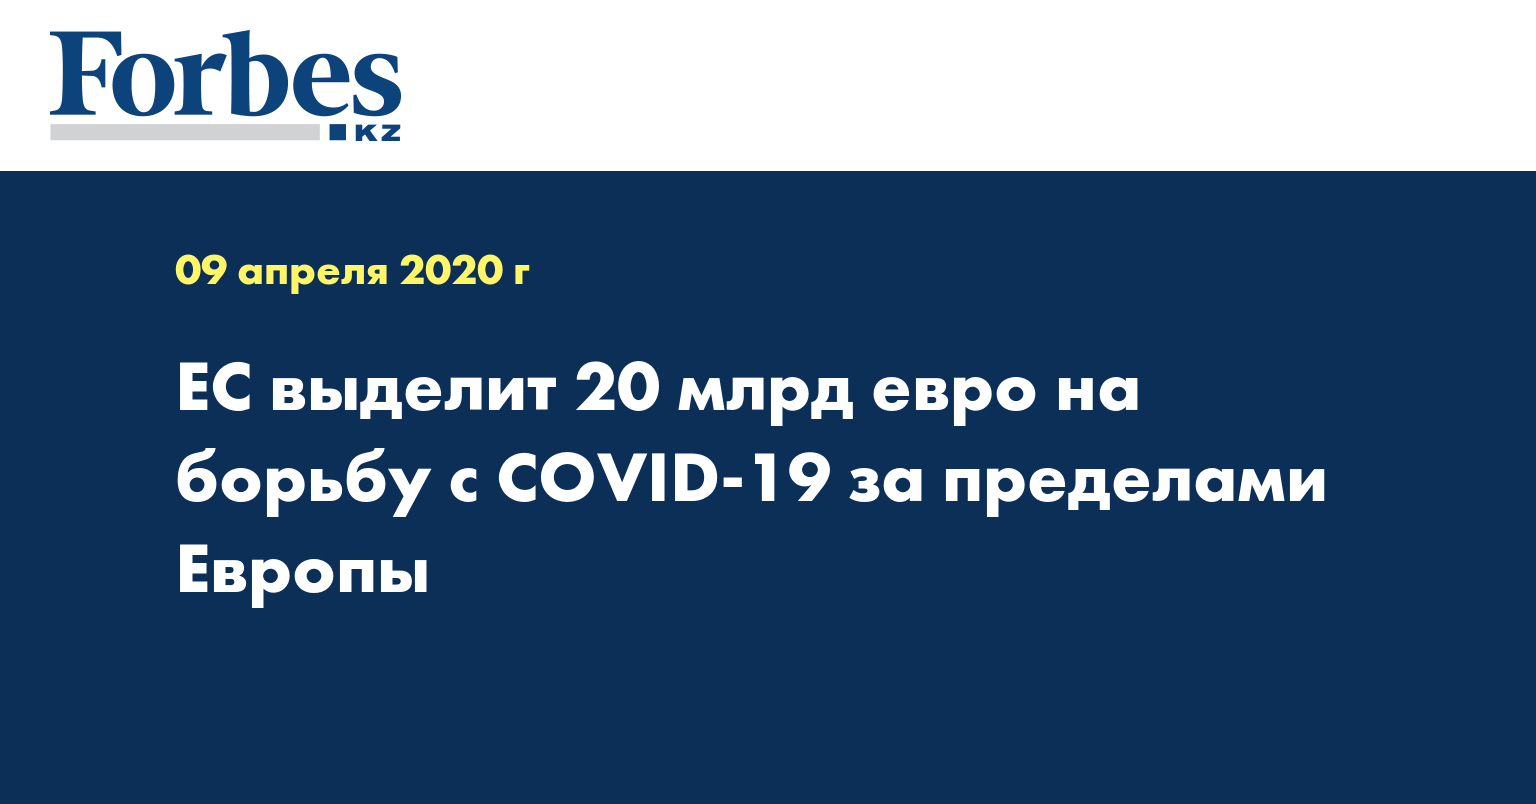 ЕС выделит 20 млрд евро на борьбу с COVID-19 за пределами Европы